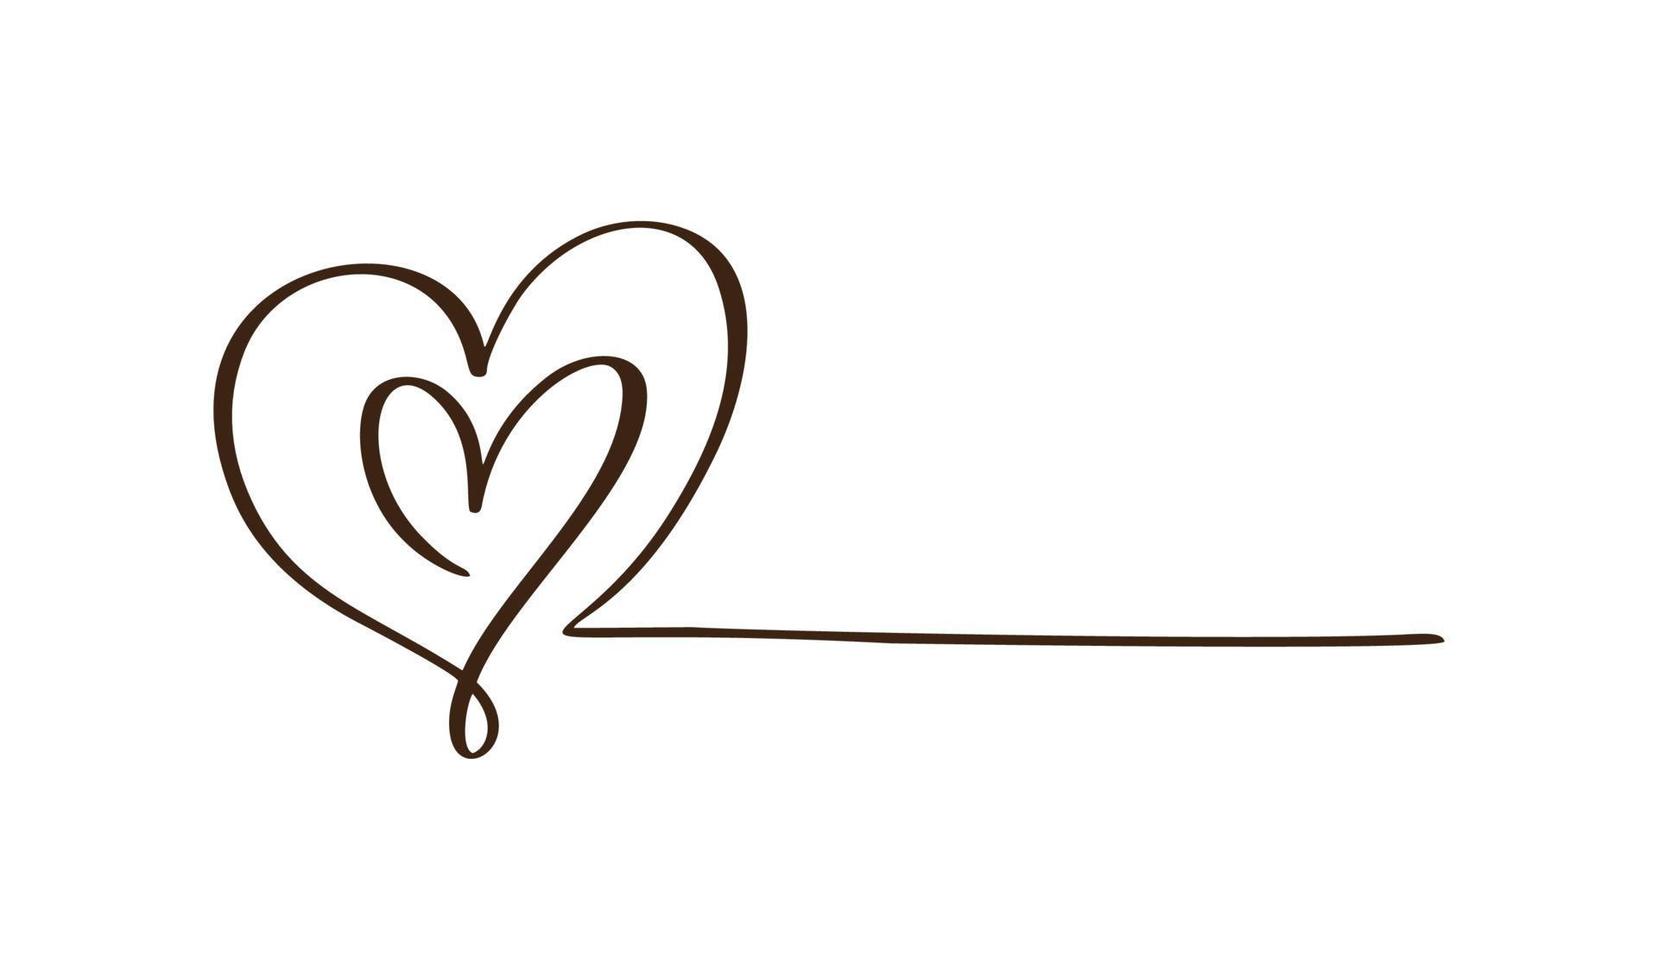 liefde pictogram vector doodle twee harten en lijn voor tekst. hand getekend valentijn dag logo. decor voor wenskaart, bruiloft, tag, foto-overlay, t-shirt print, flyer, posterontwerp